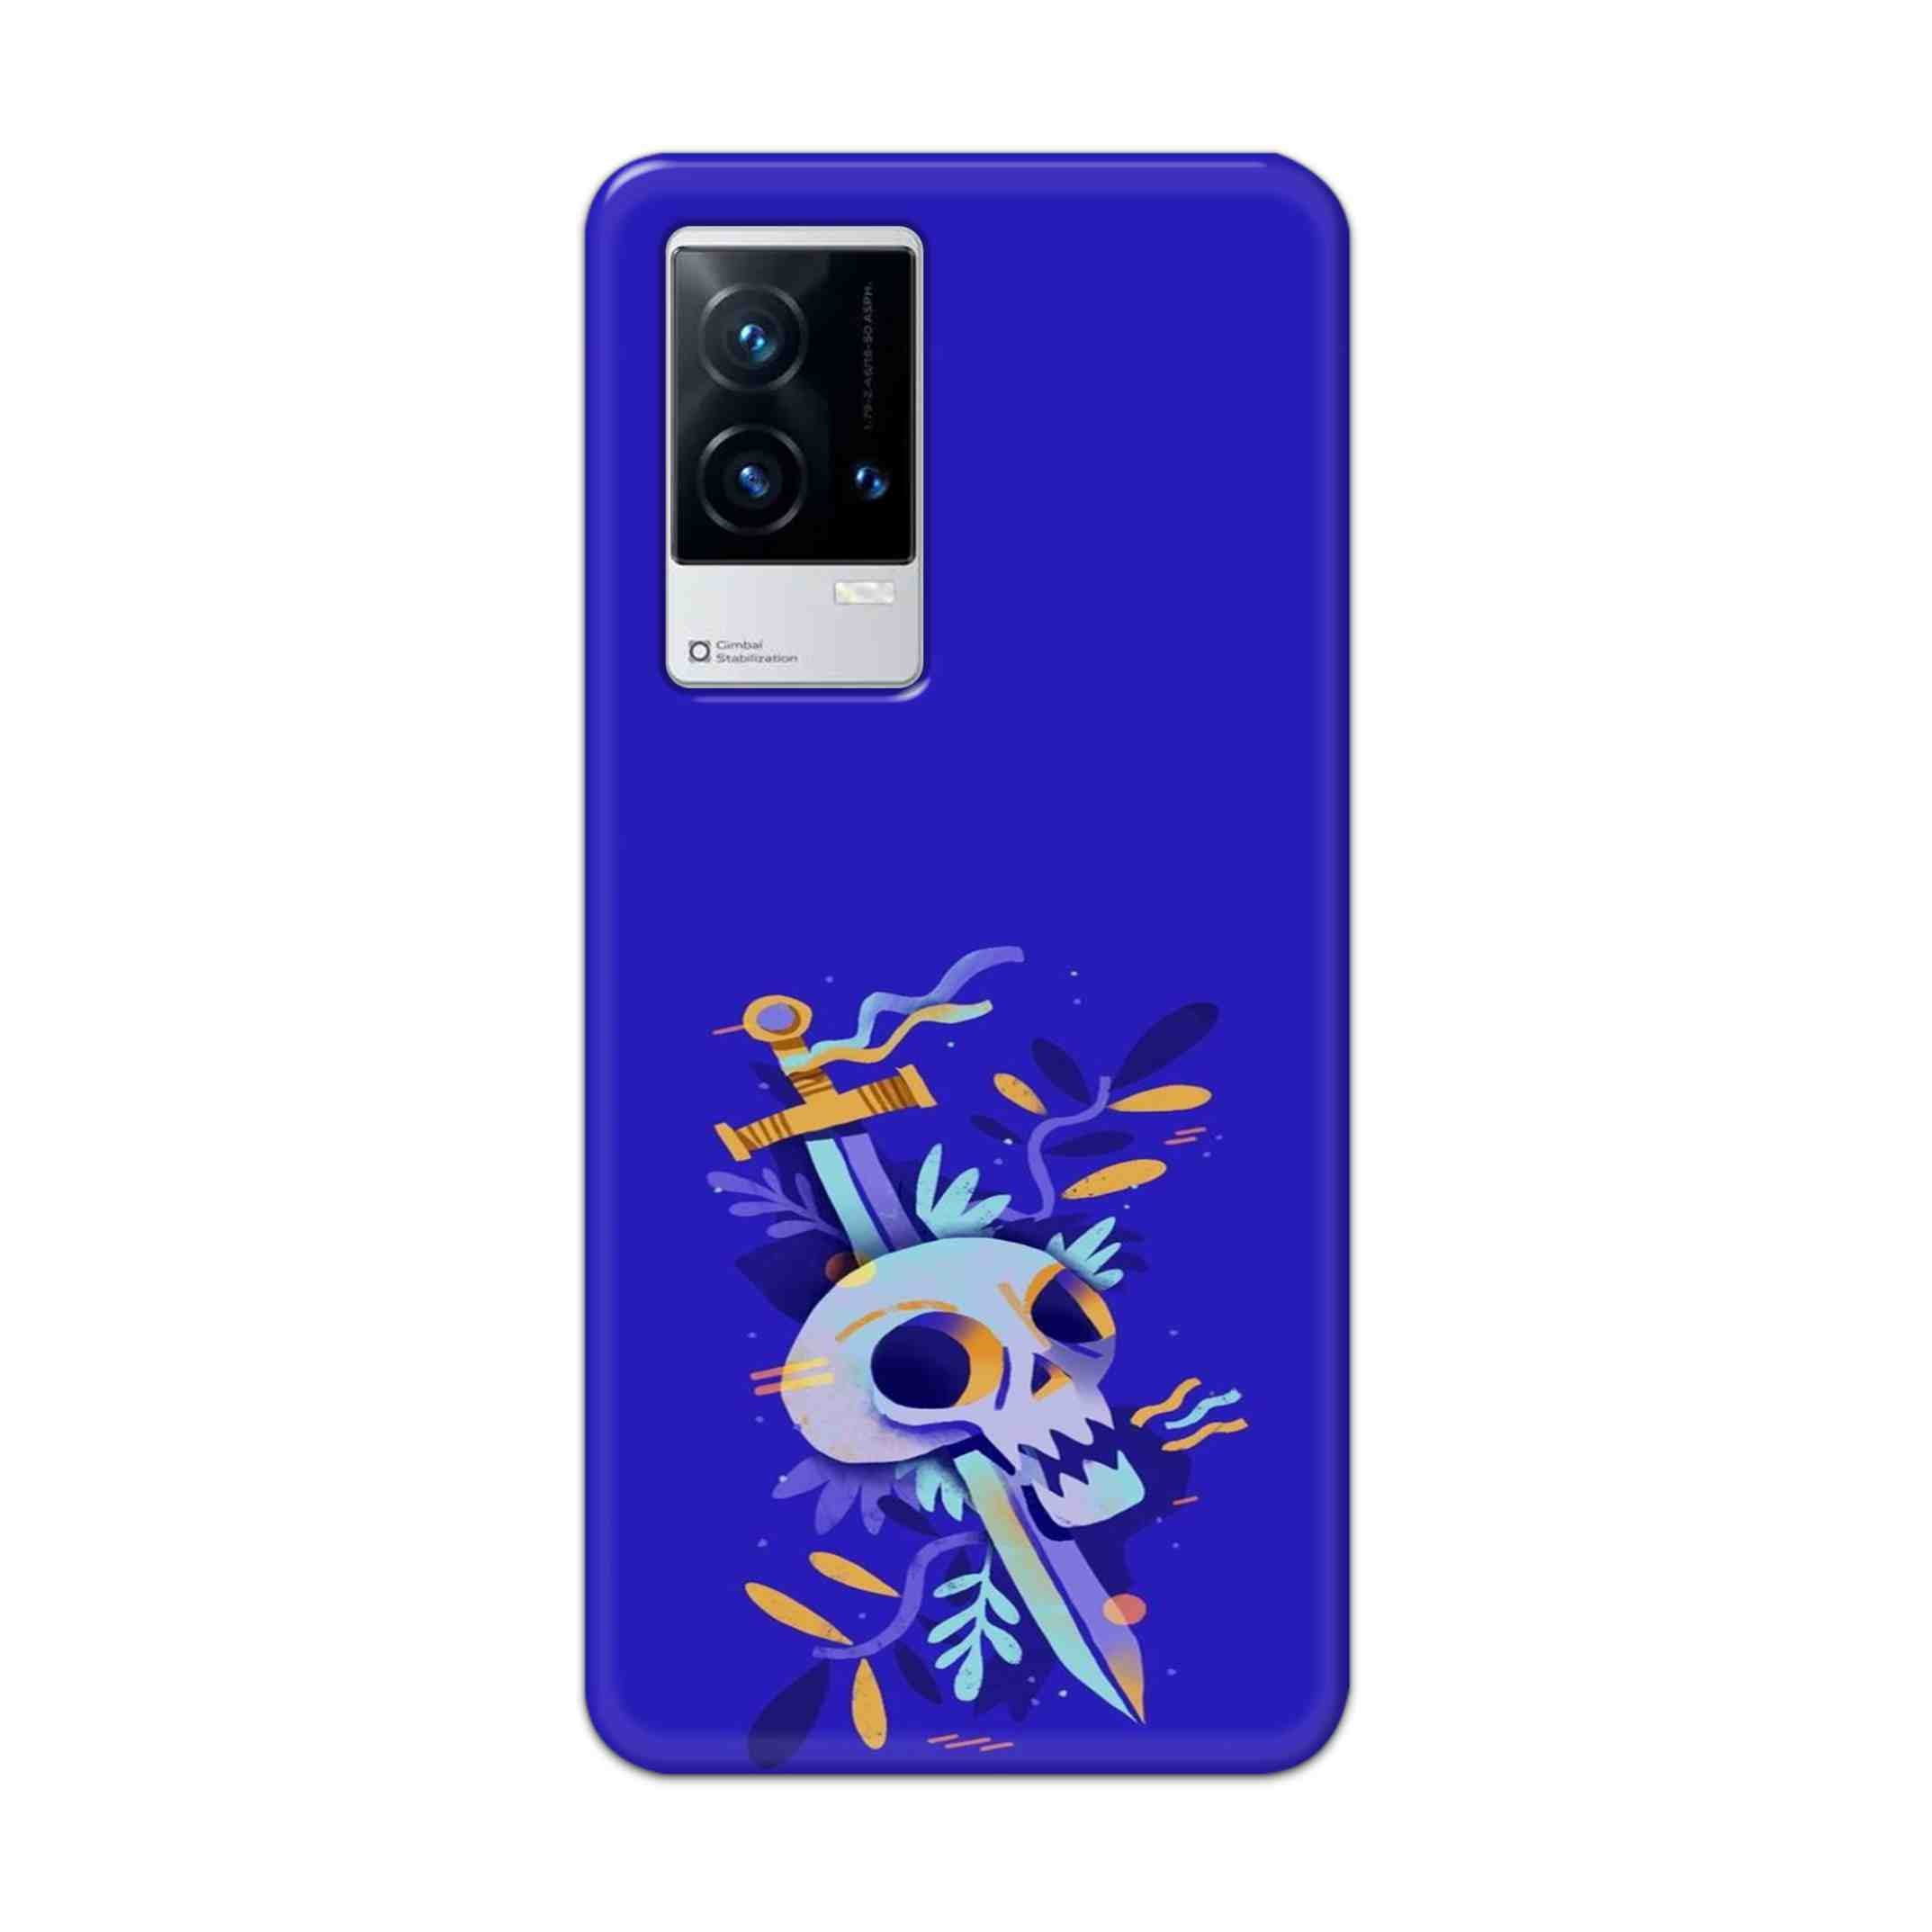 Buy Blue Skull Hard Back Mobile Phone Case Cover For Vivo iQOO 9 5G Online